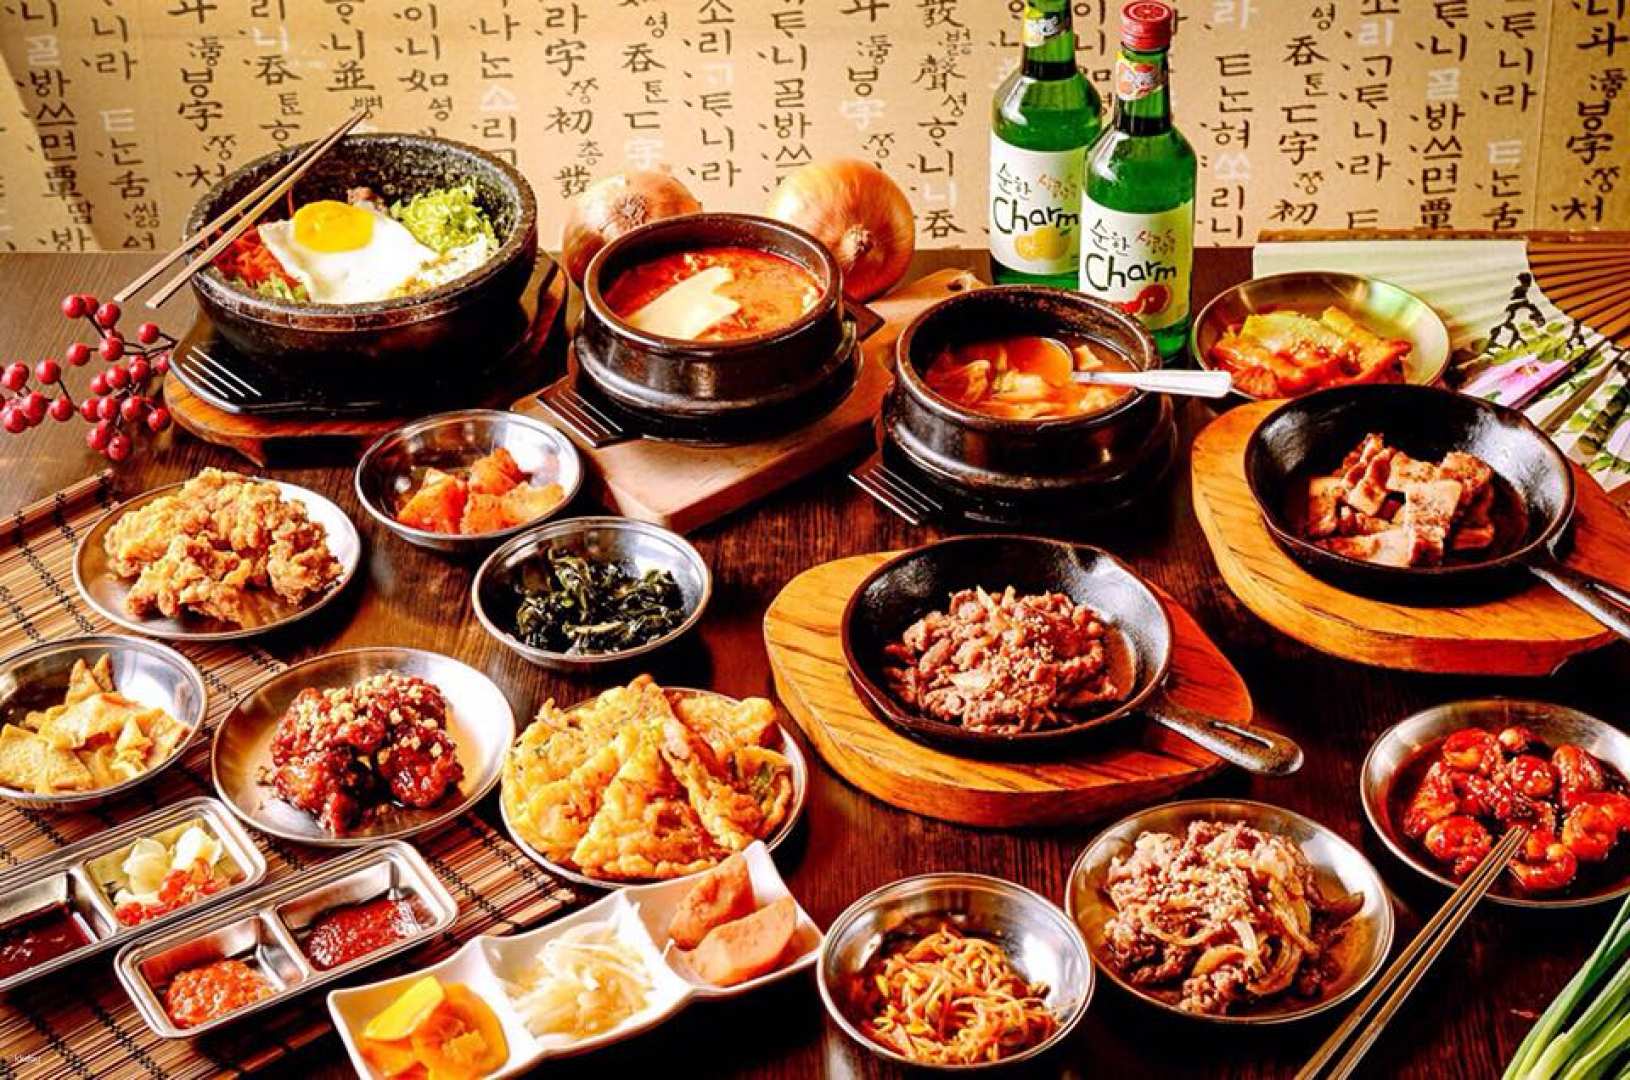 高雄-槿韓食堂餐券| 平日韓式料理吃到飽| 須自行電話預約